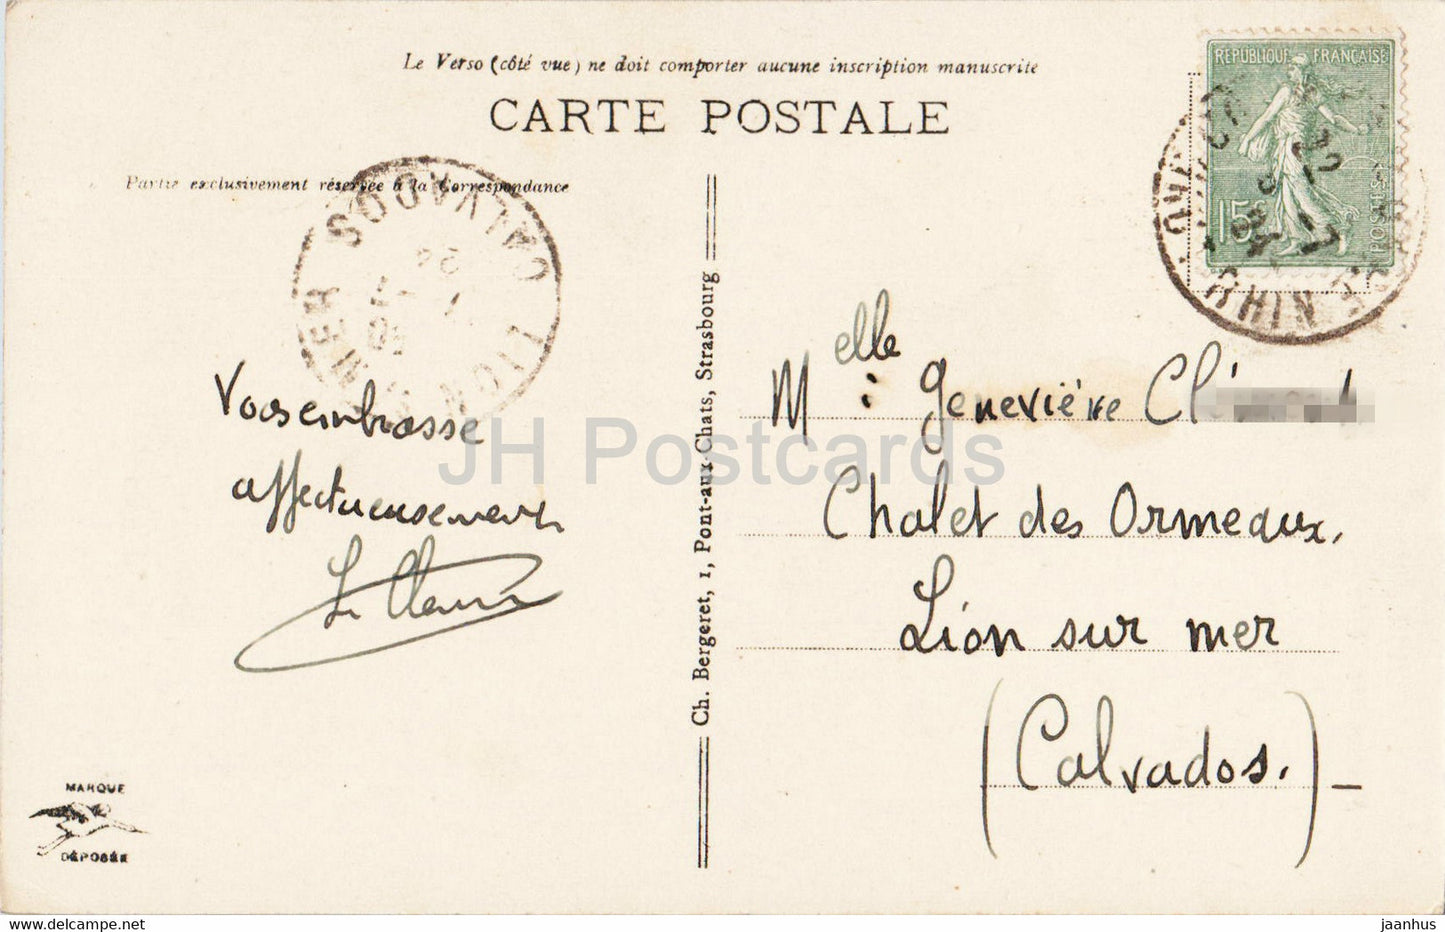 Colmar - Maison des Tetes - 11 - alte Postkarte - 1924 - Frankreich - gebraucht